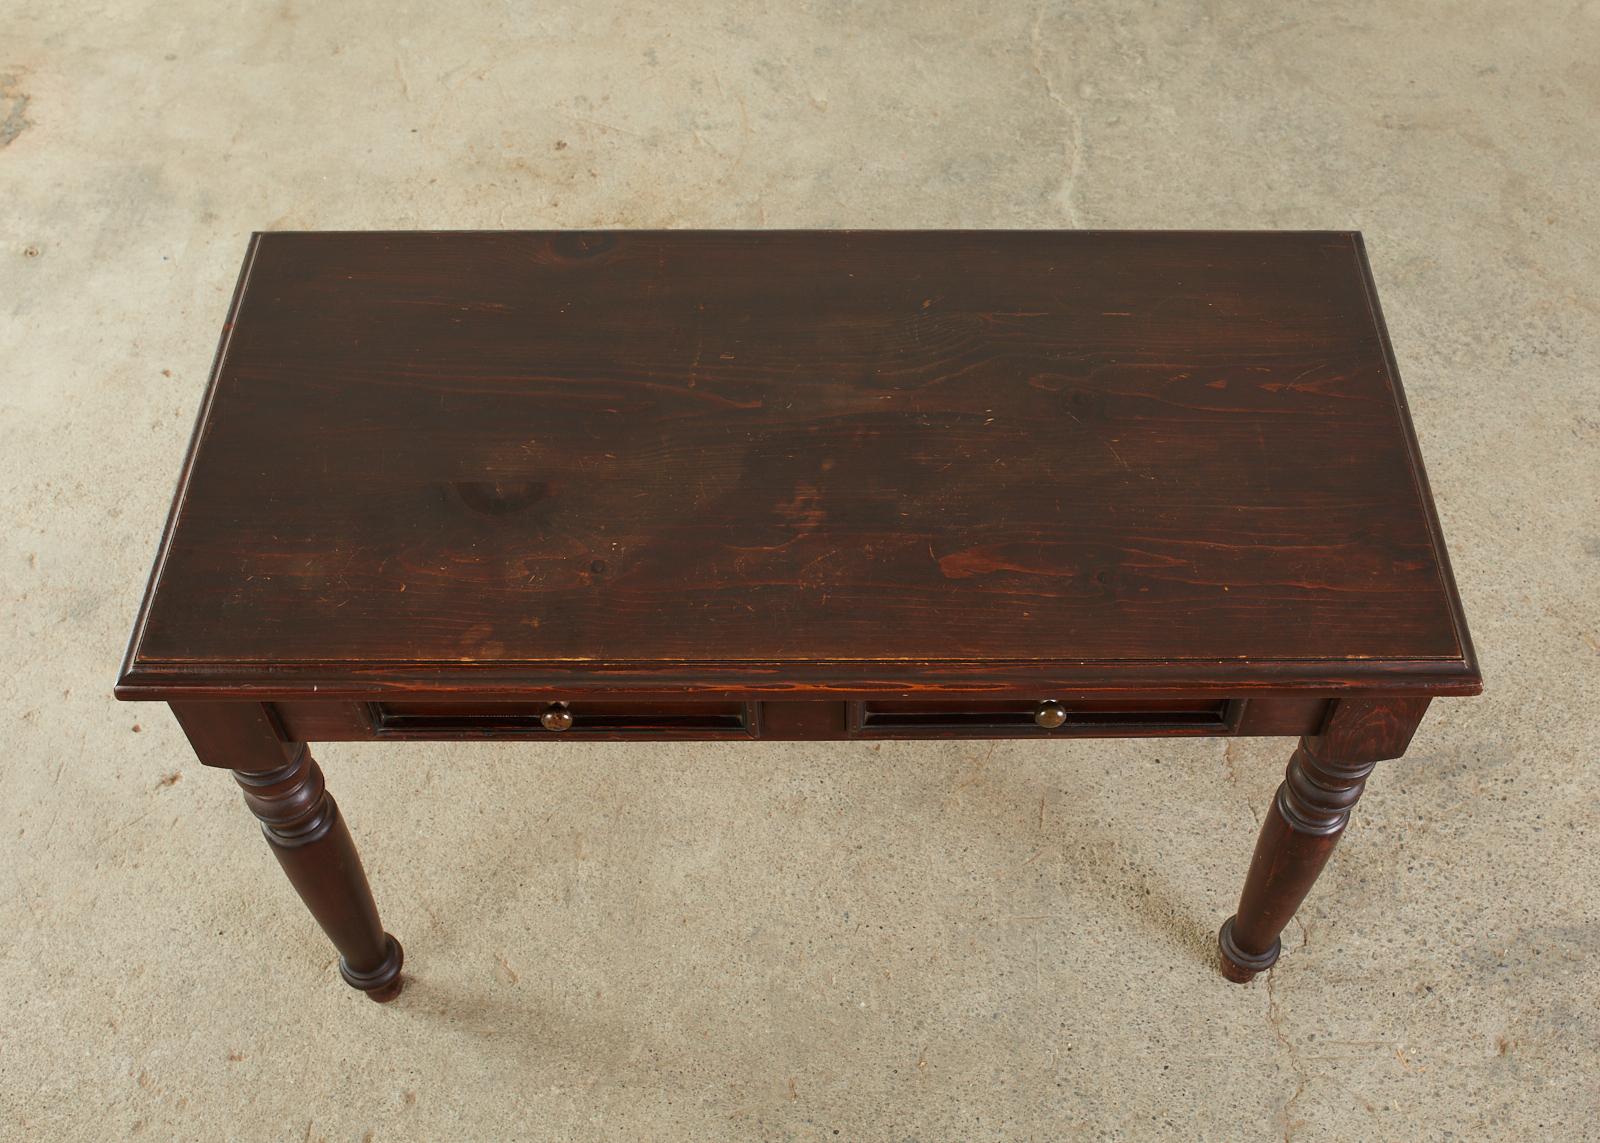 20th Century English Edwardian Style Turned Leg Pine Writing Table Desk